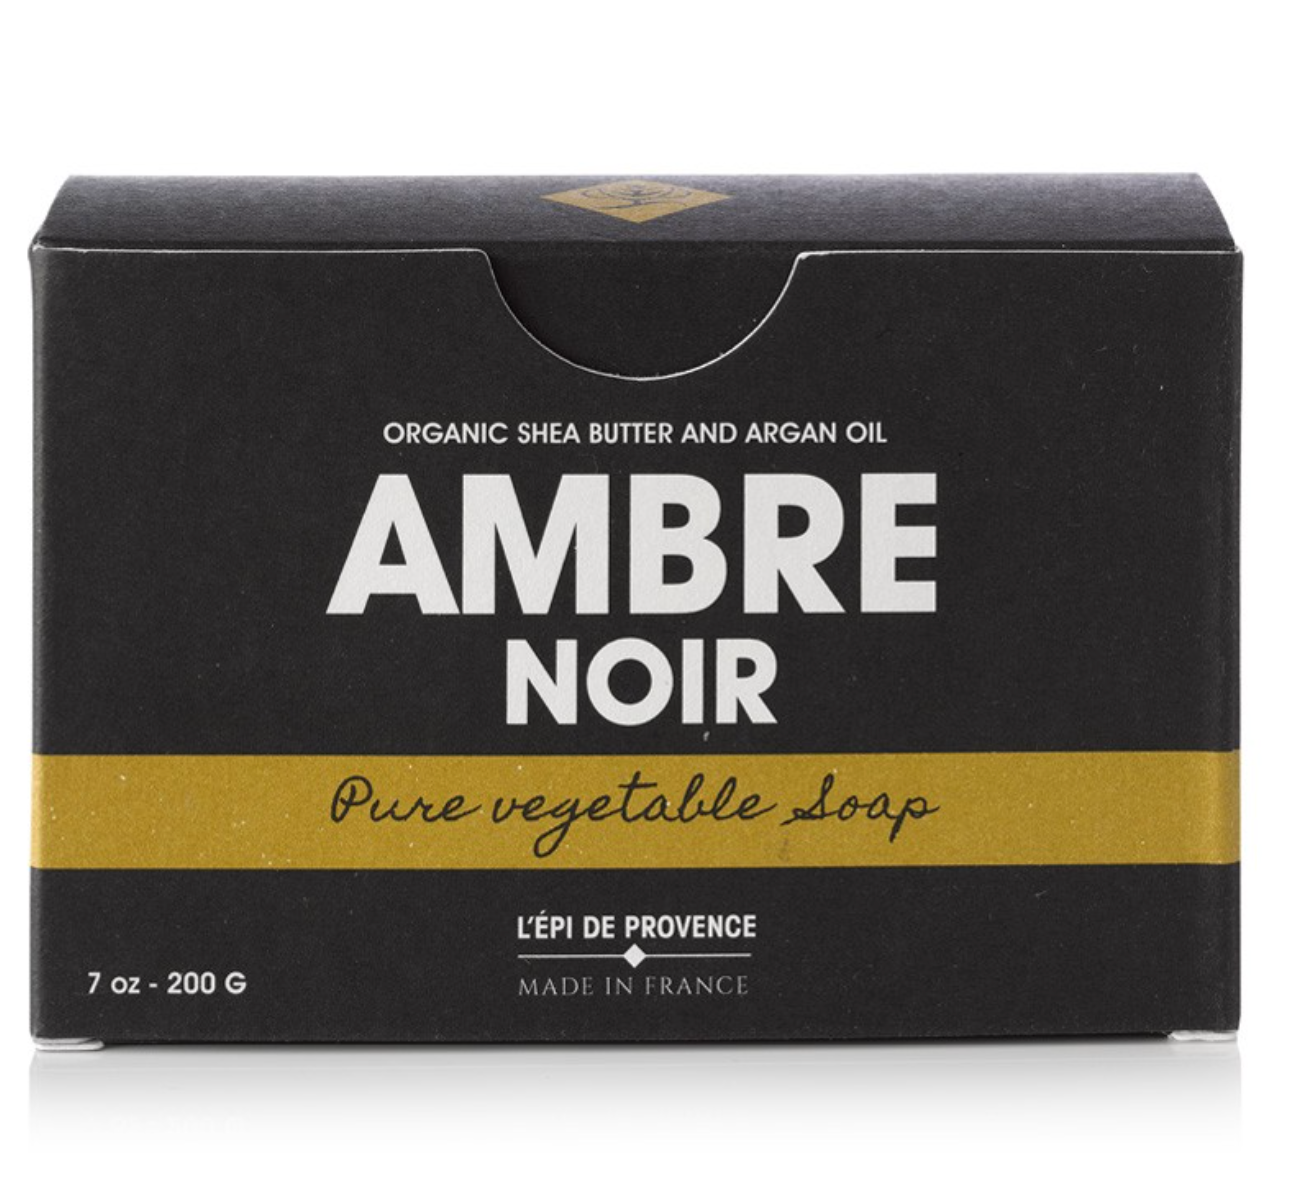 Ambre Noir bar soap by Echo France